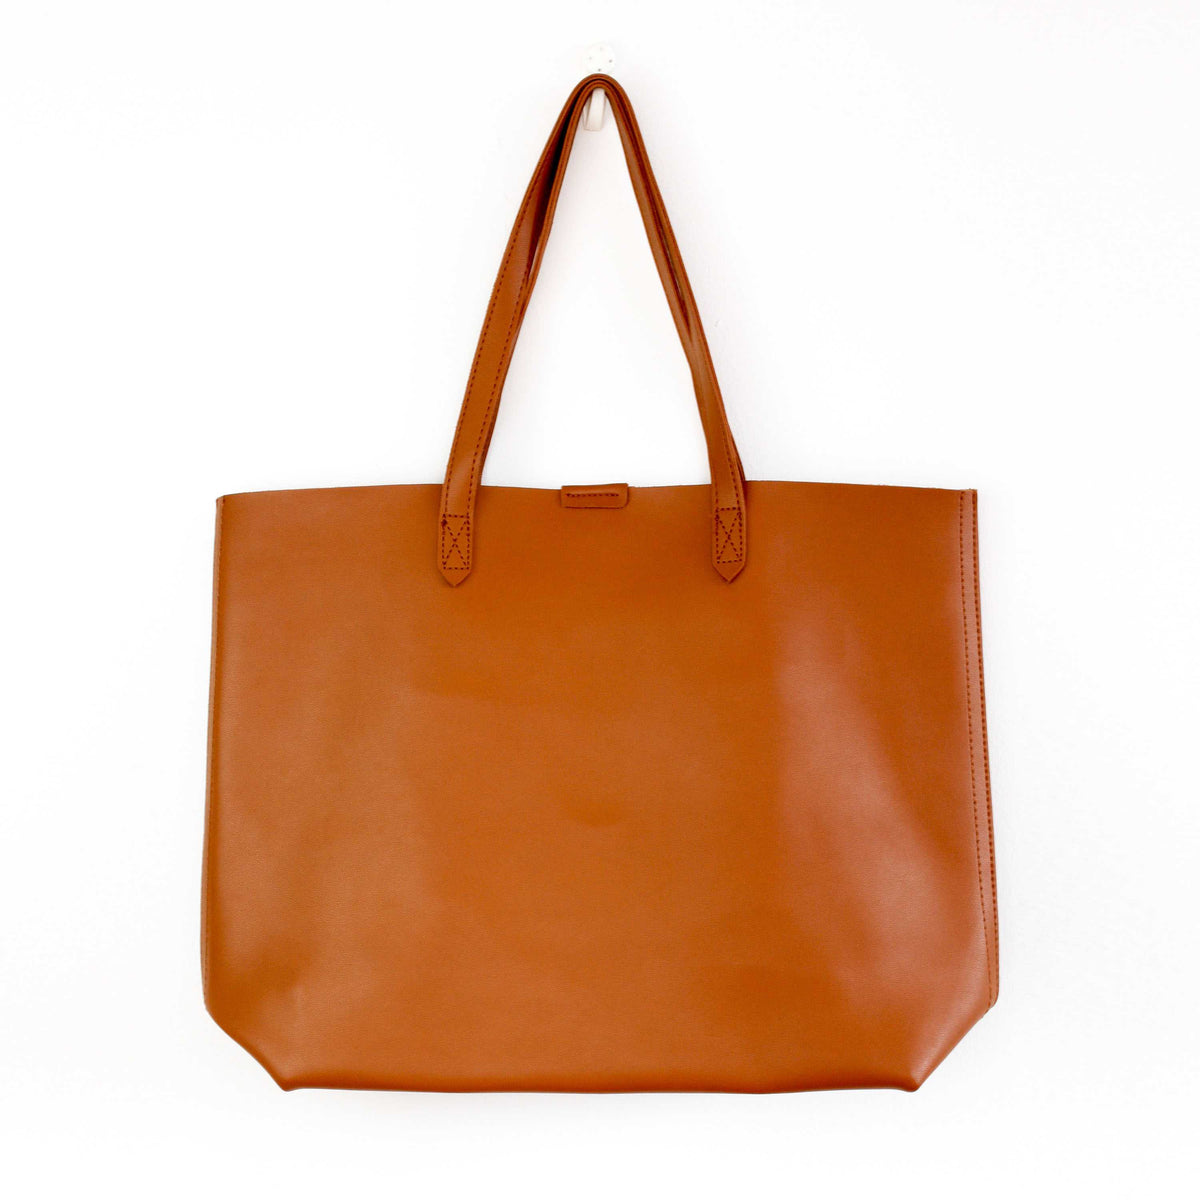 Oversized Tote Bag - Burnt Orange - worthtryit.com